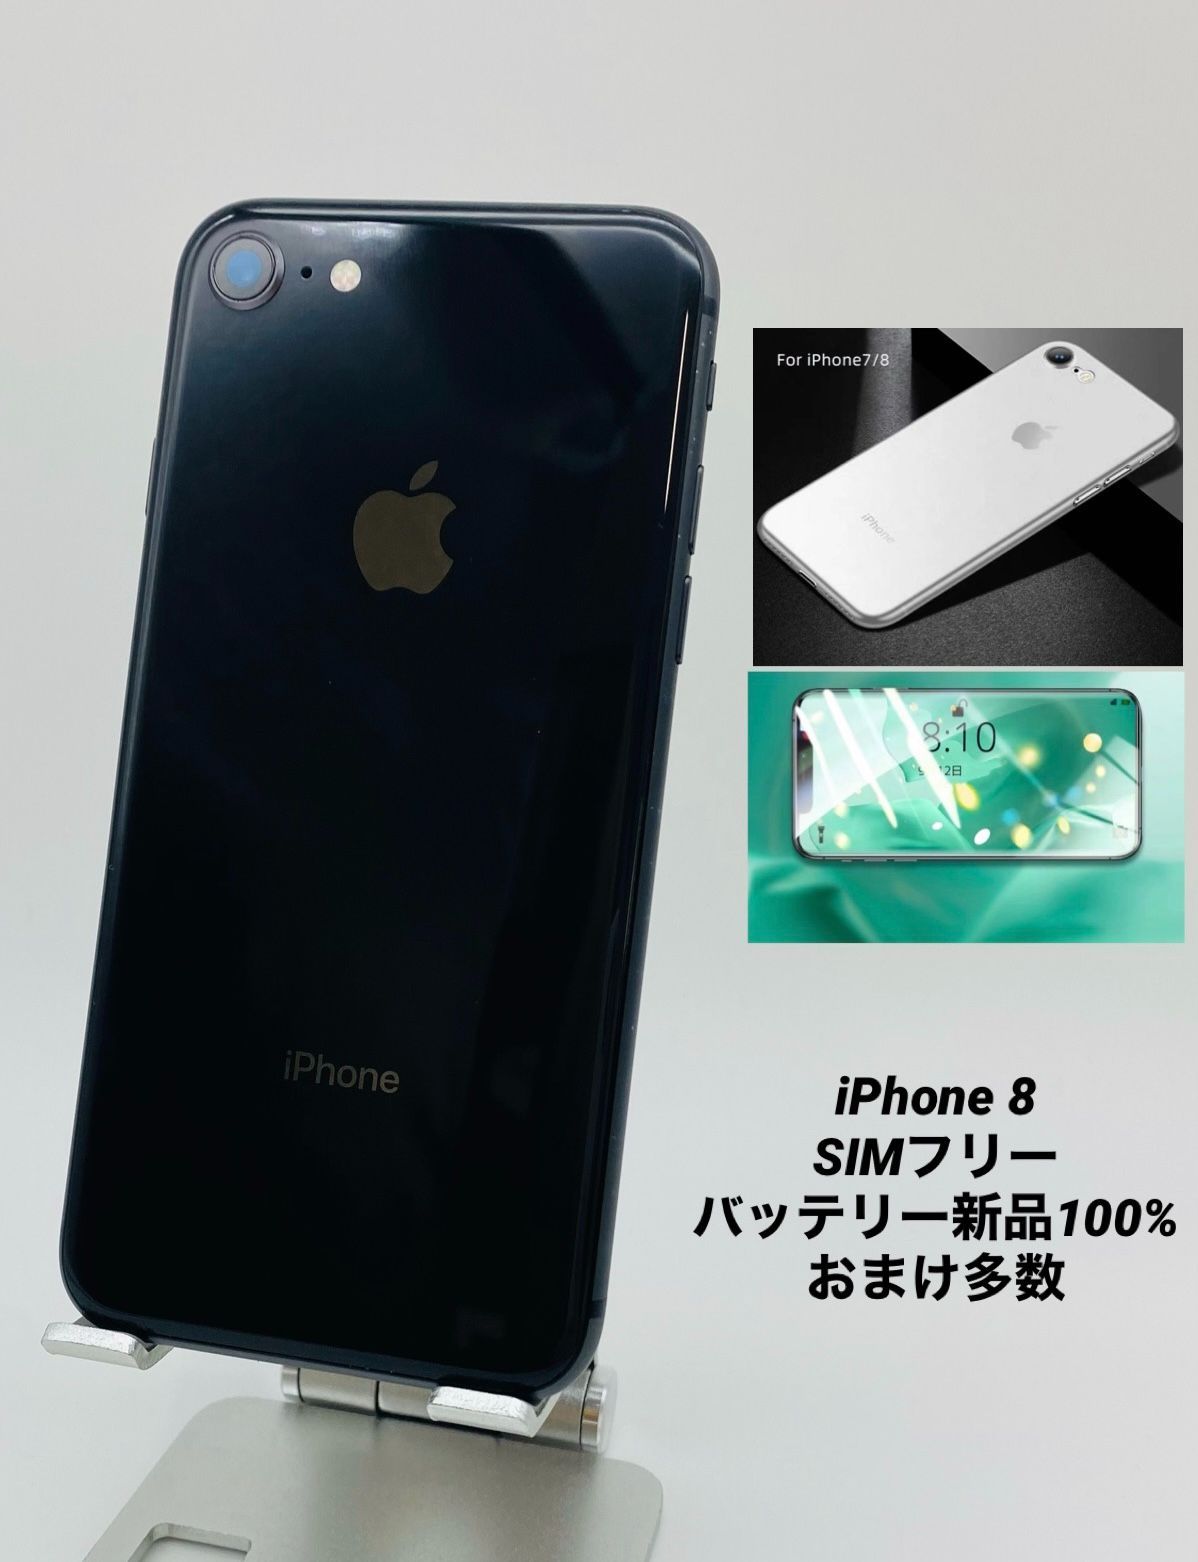 iPhone8 64GB スペースグレイ/シムフリー/大容量2300mAh 新品 